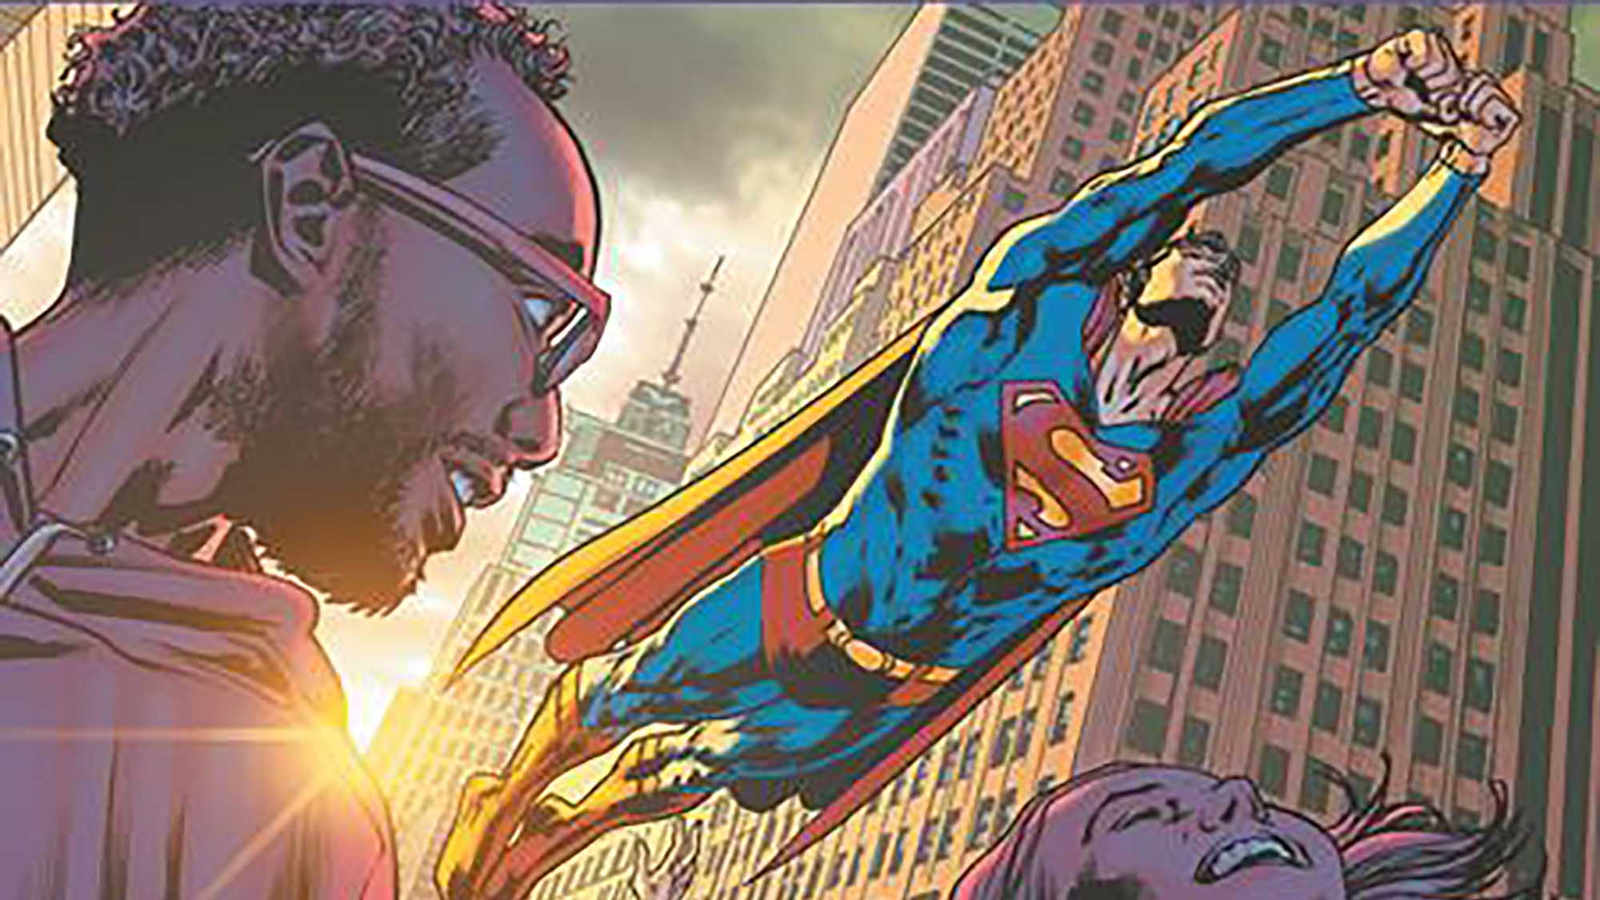 Anúncio com volta de Henry Cavill como Superman deve acontecer na Comic Con  San Diego, nos Estados Unidos